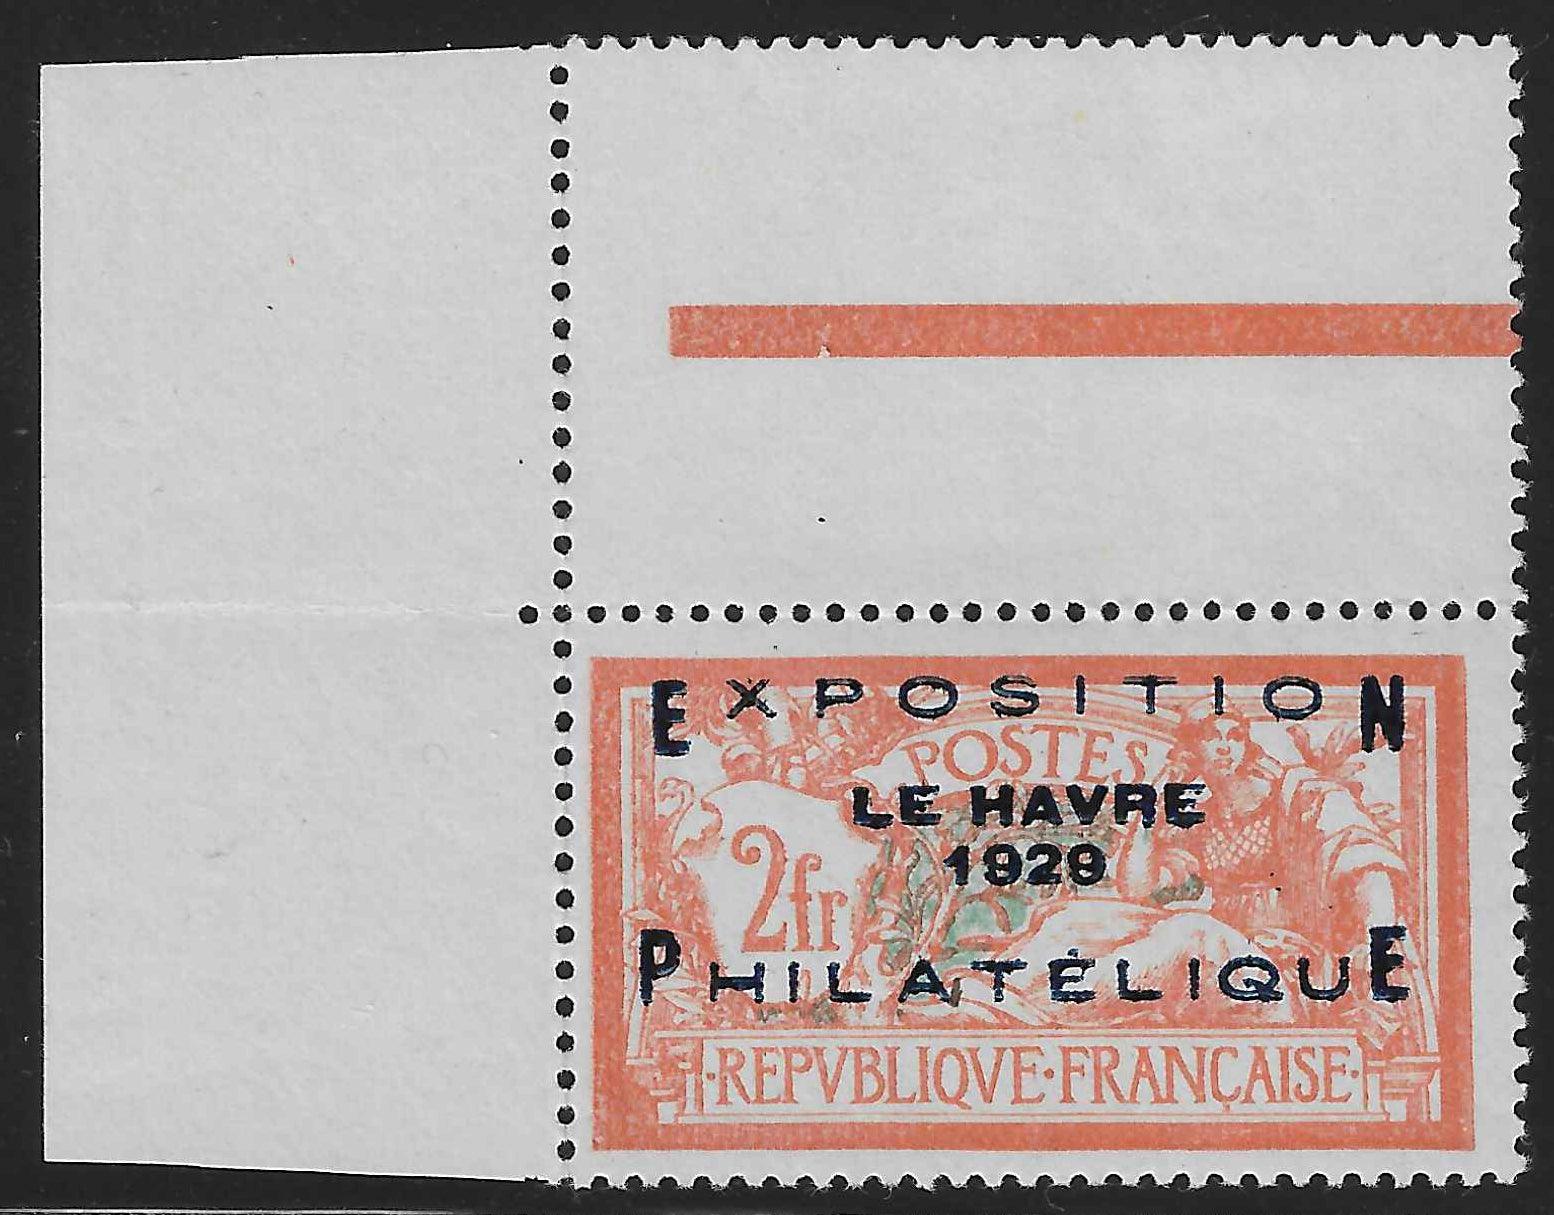 N°YT 257A - Exposition philatélique du Havre - neuf** - SUP - signé et avec certificat papier Calves - Calves